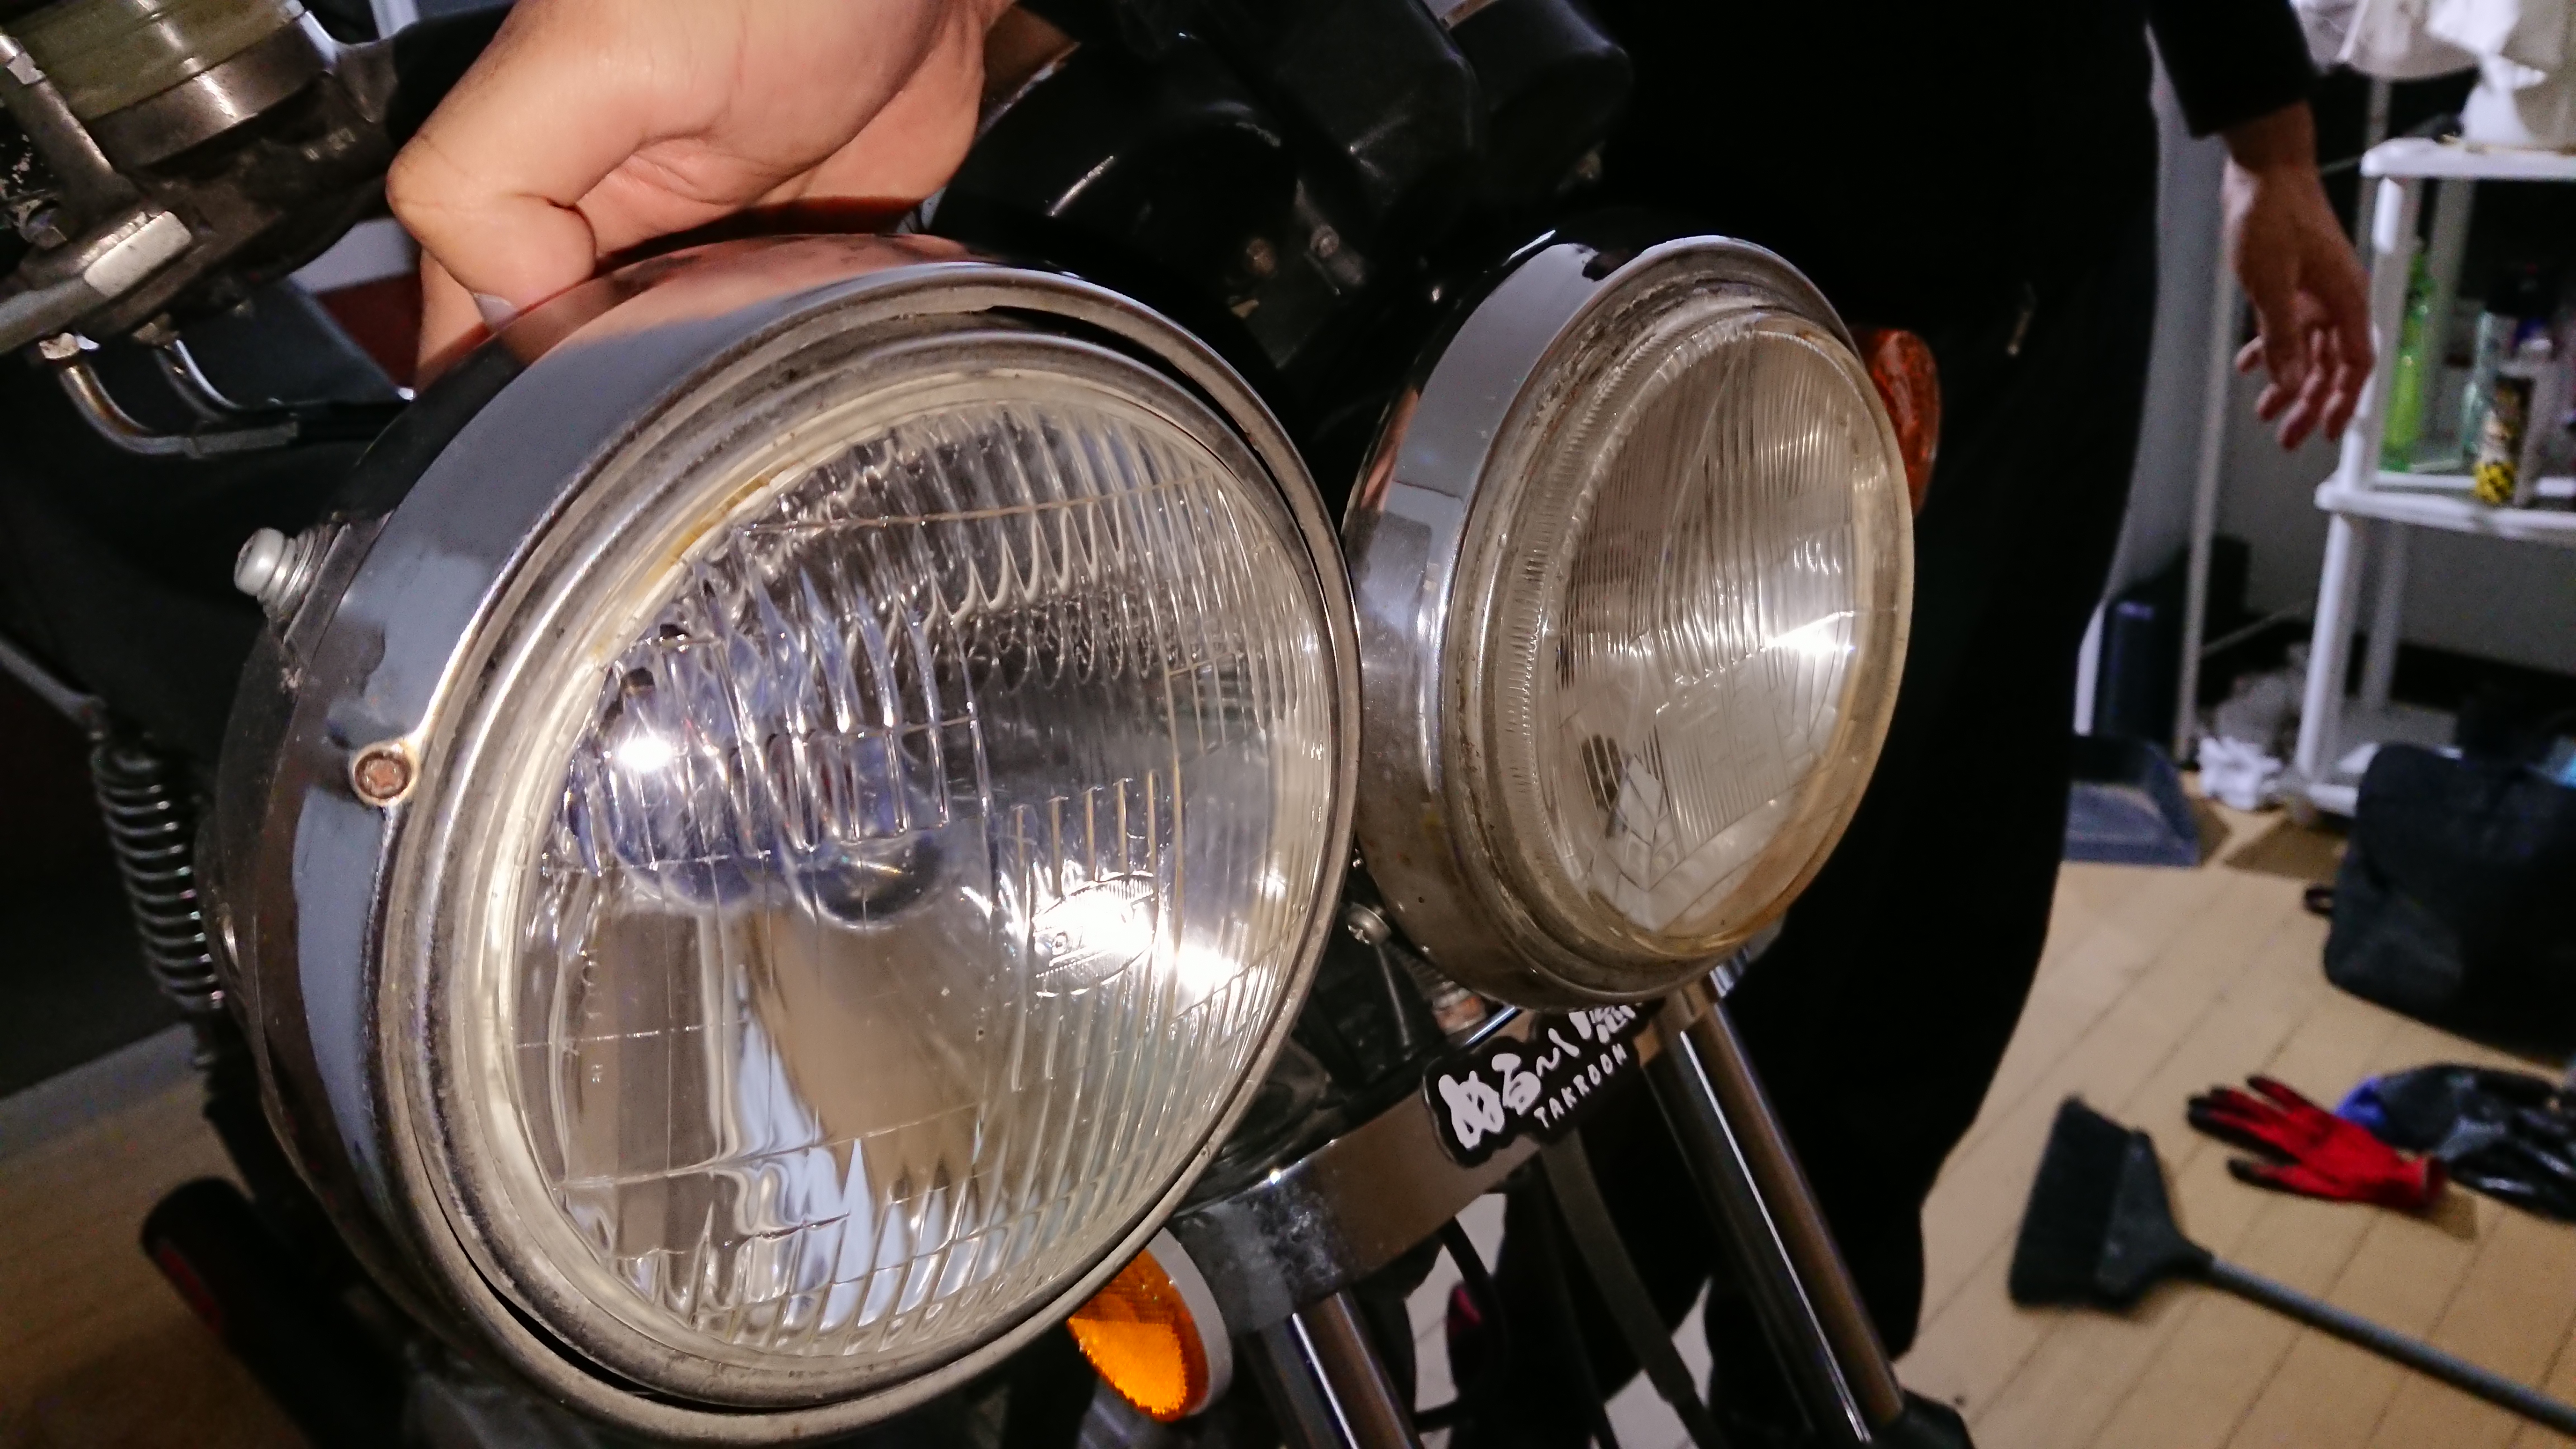 CIBIEの凹みライトに交換！GS400カスタム。 | GS400 旧車バイクのブログ@王鈴